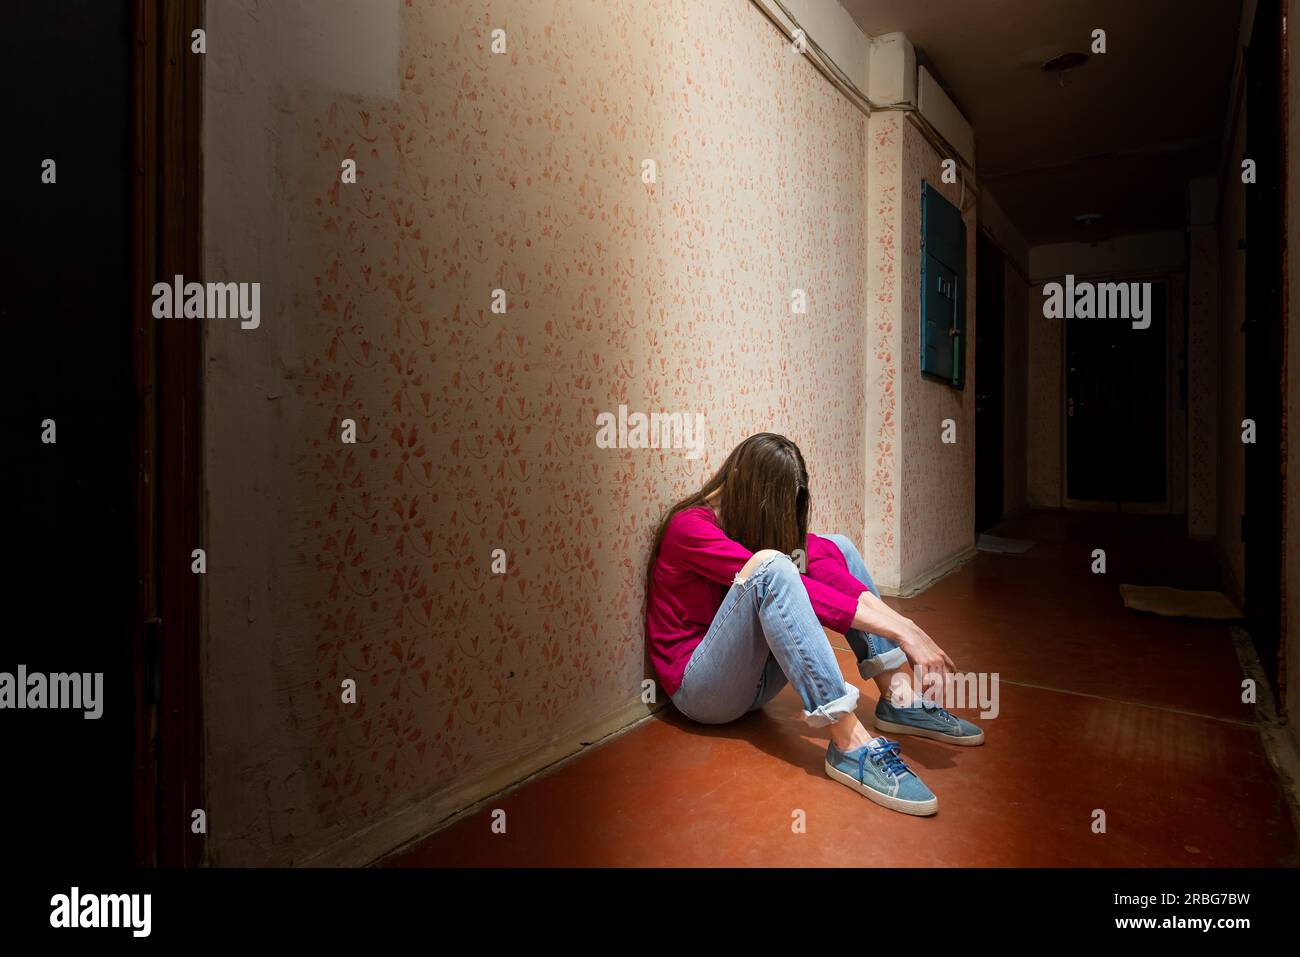 Una donna triste e disperata siede in un corridoio buio illuminato da una luce cupa. Il suo dolore e i suoi molti problemi l'hanno spinta in completo isolamento. Foto Stock